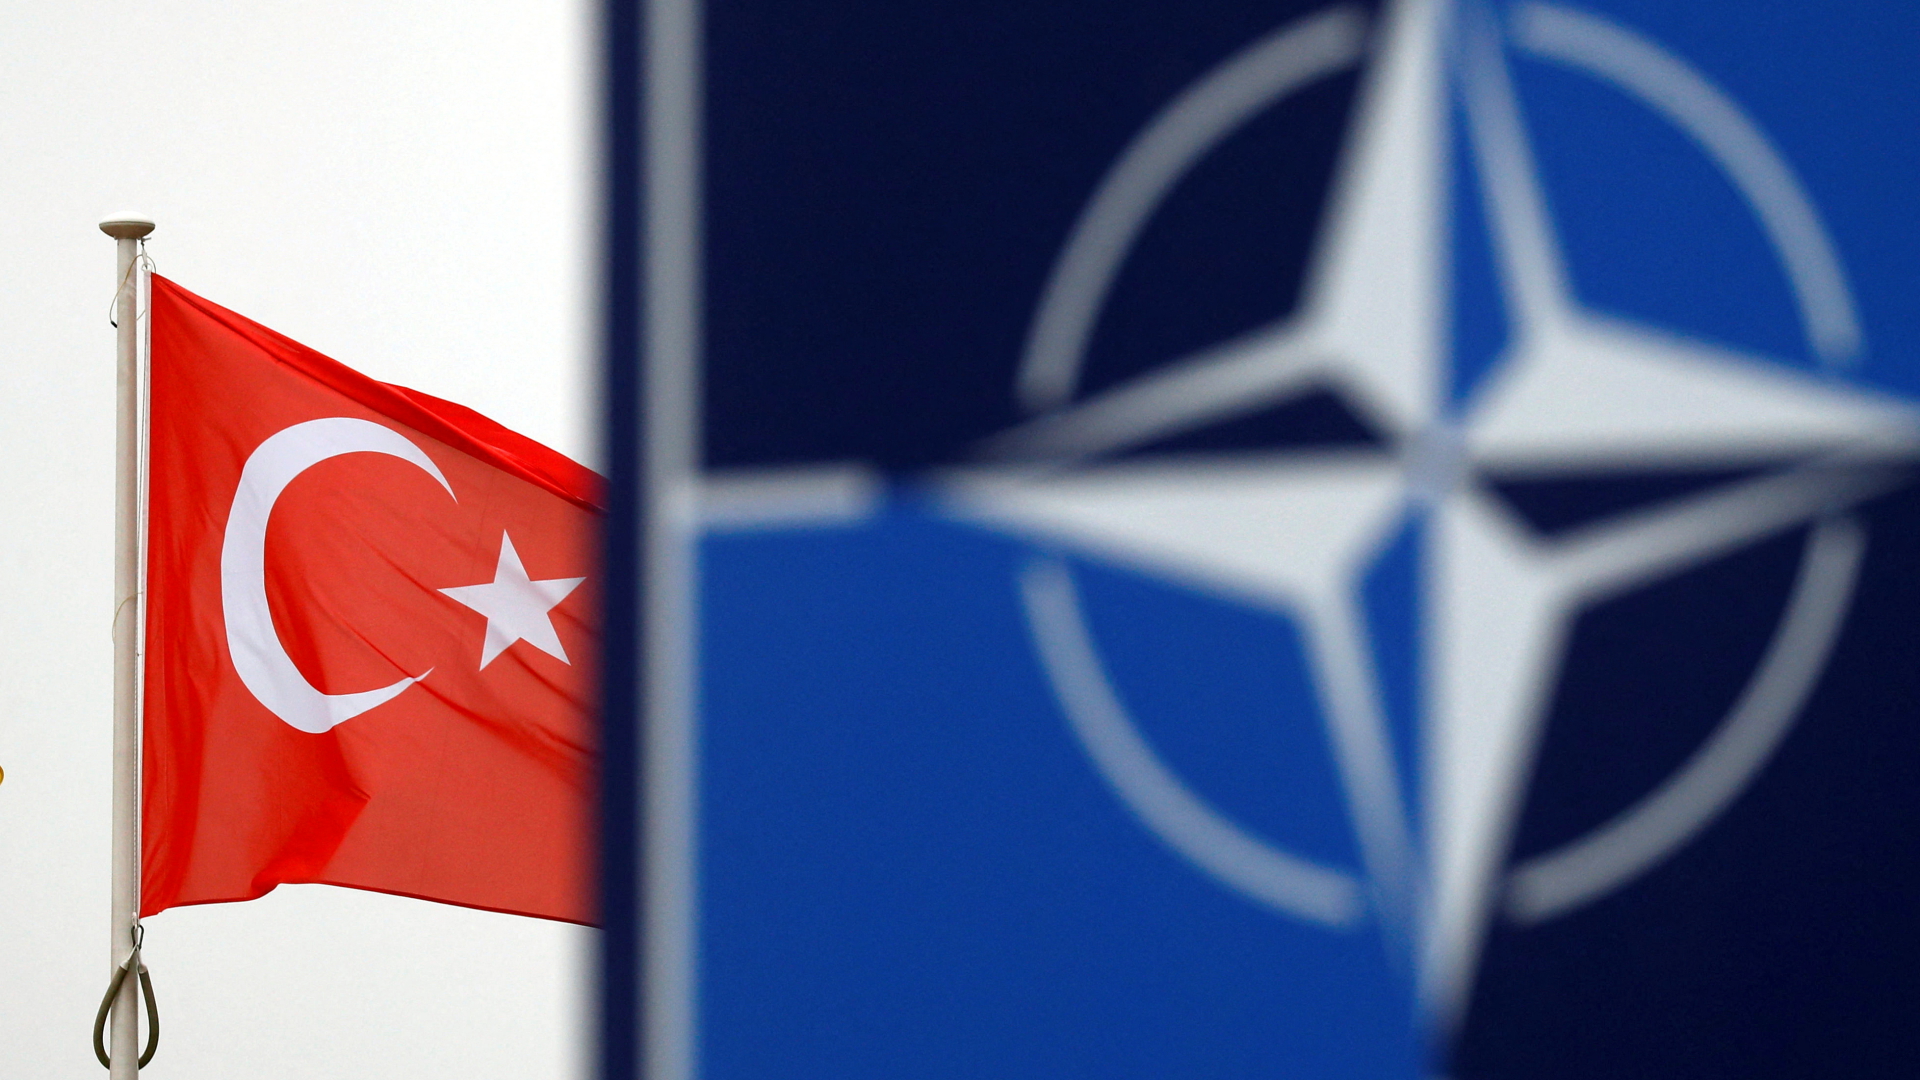 Flaggen der Türkei und der NATO nebeneinander. | REUTERS